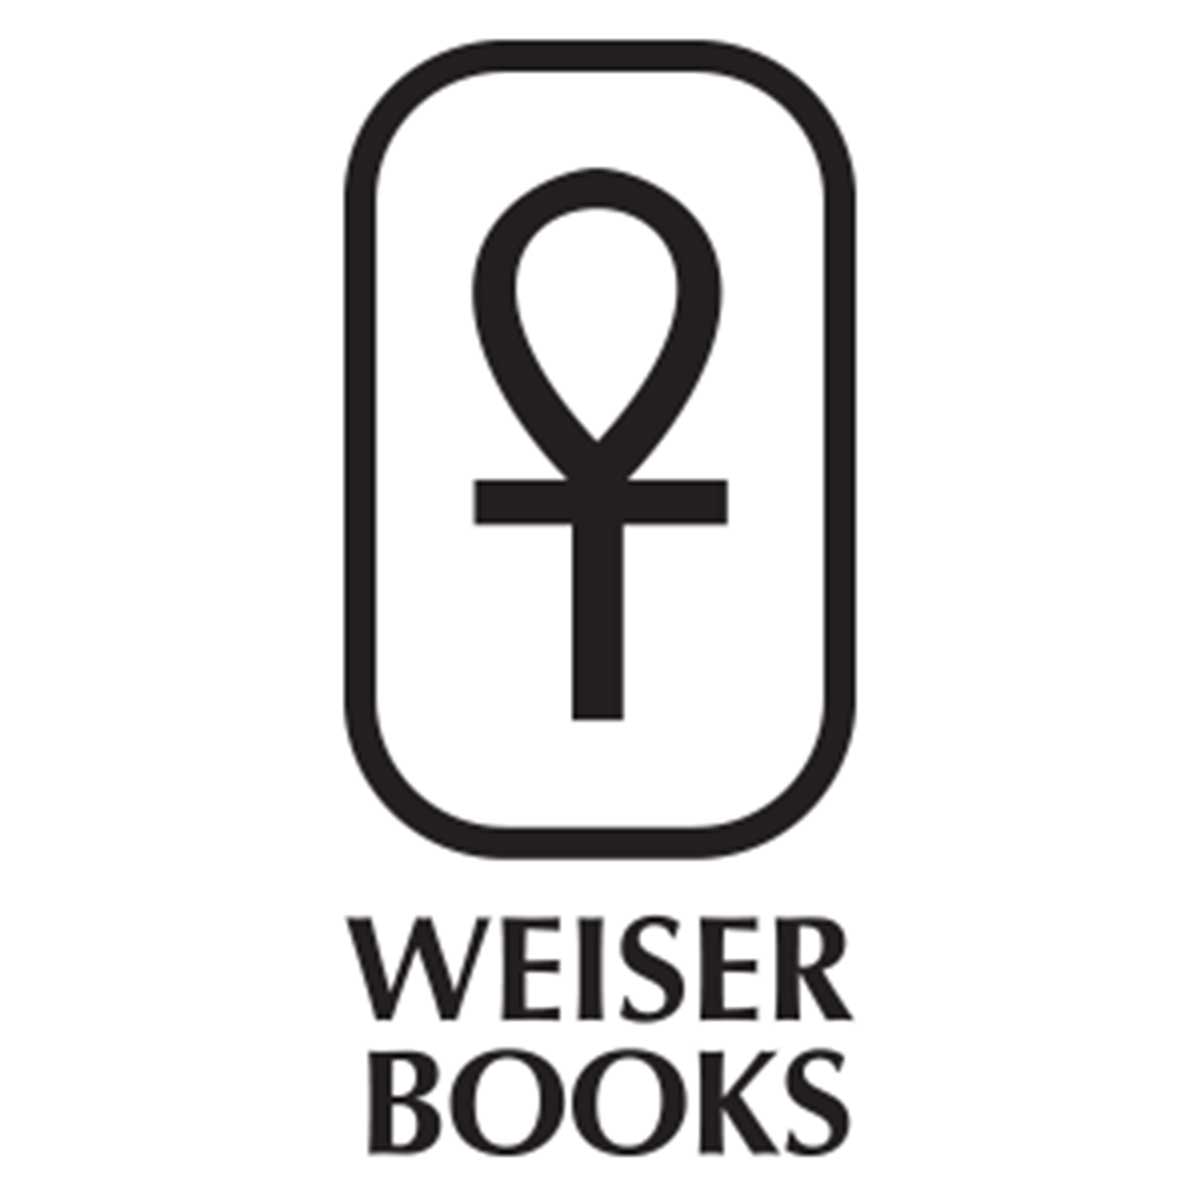 Weiser Books logo.